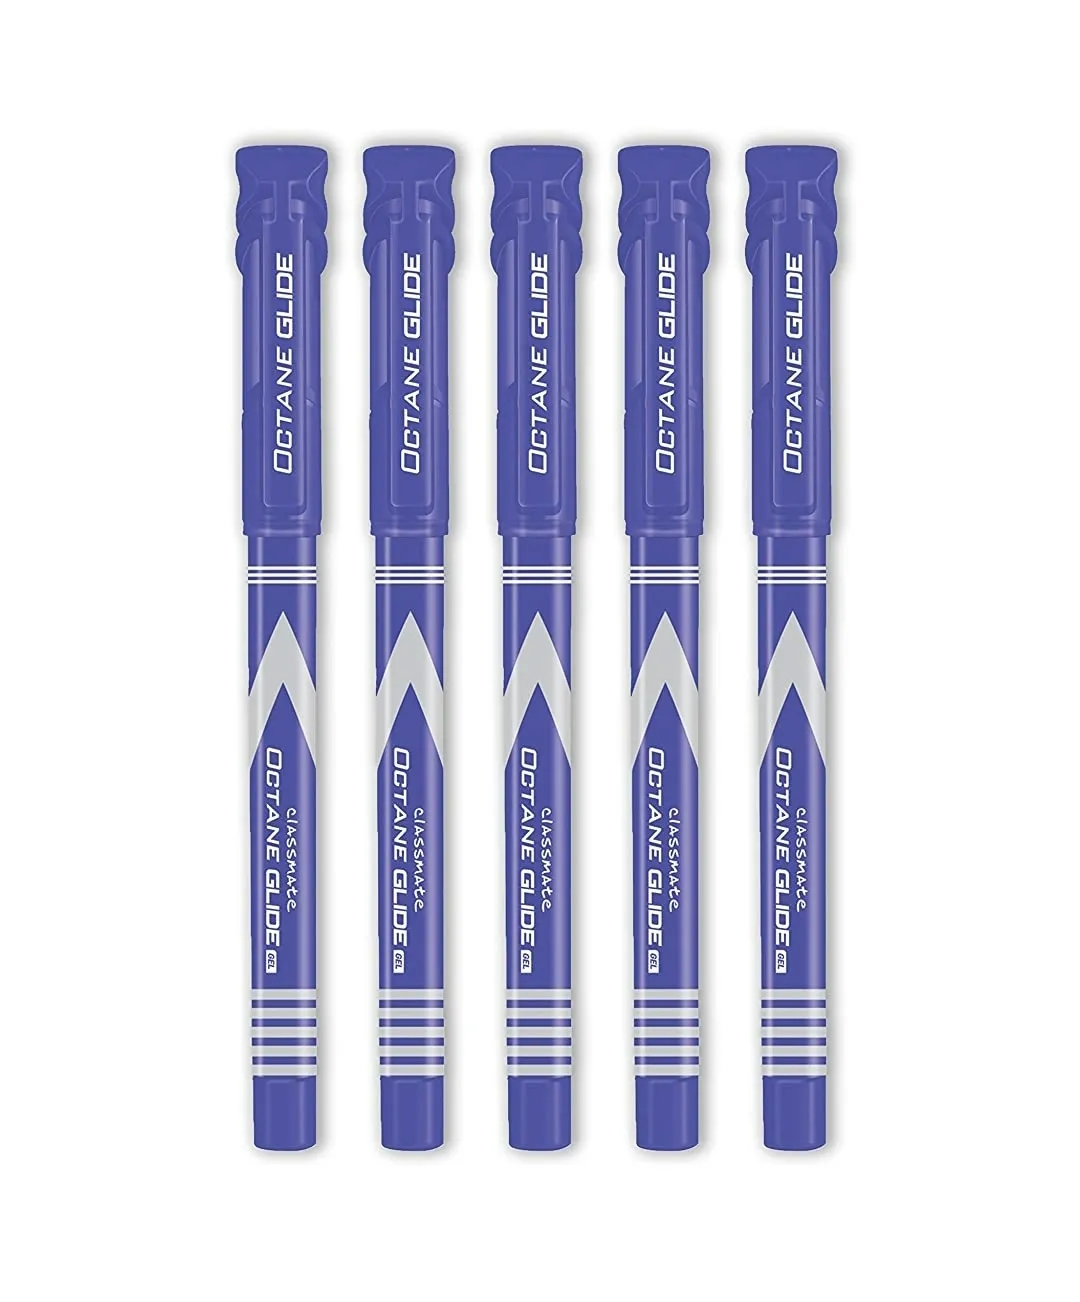 Classmate Octane Glide Gel- Blue Pen, Pack of 5 pens, Blister Pack